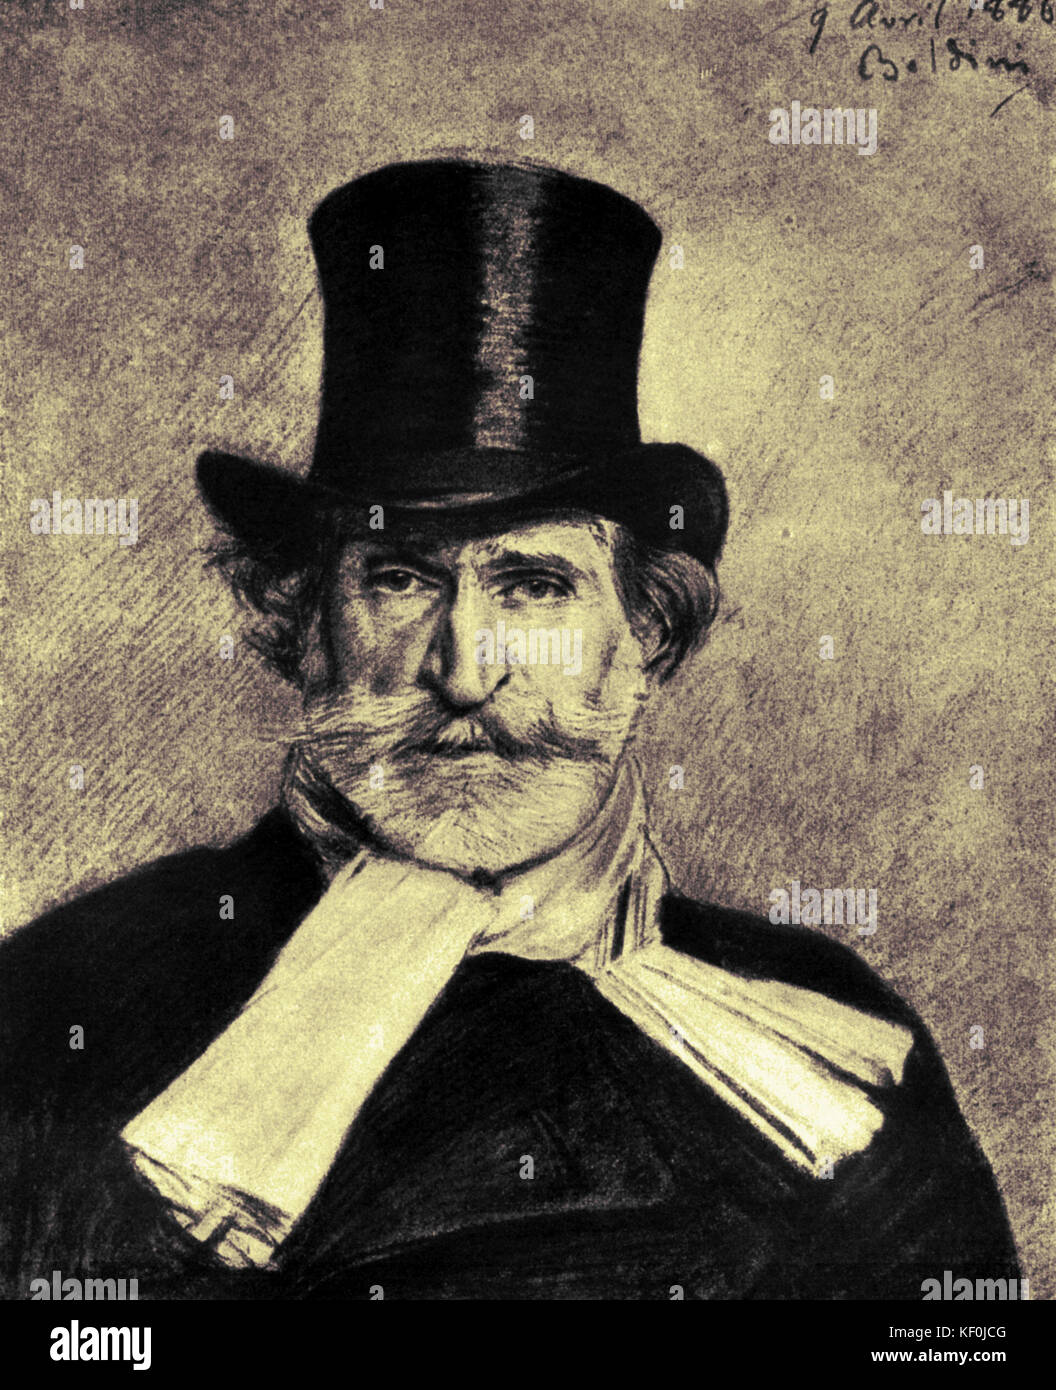 G. Verdi in 9th April 1886, by Giovanni Boldini. Italian composer. (Boldini died 1931) 1813-1901 Stock Photo